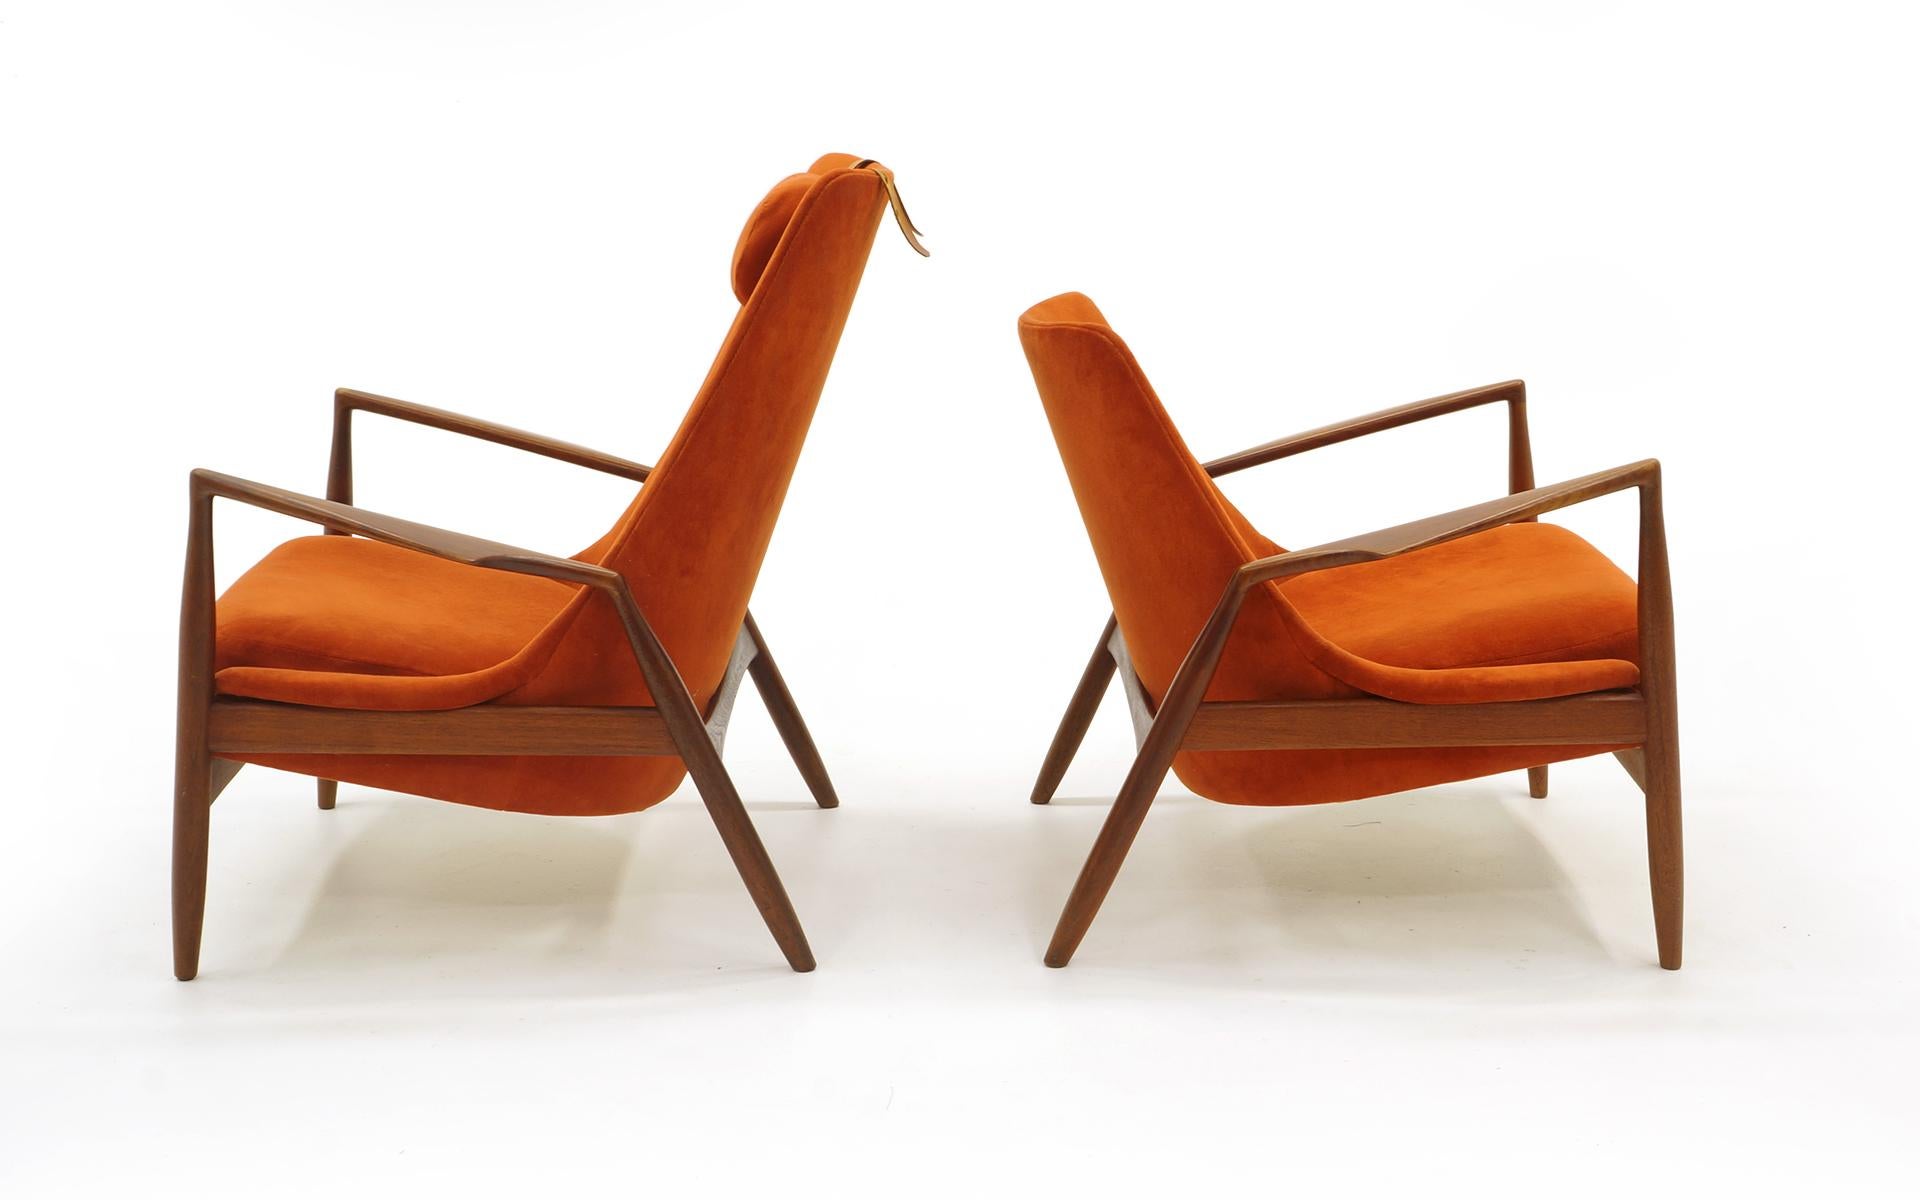 Pair of Ib Kofod-Larsen Seal or Sälen Lounge Chairs, Teak and Burnt Orange 1